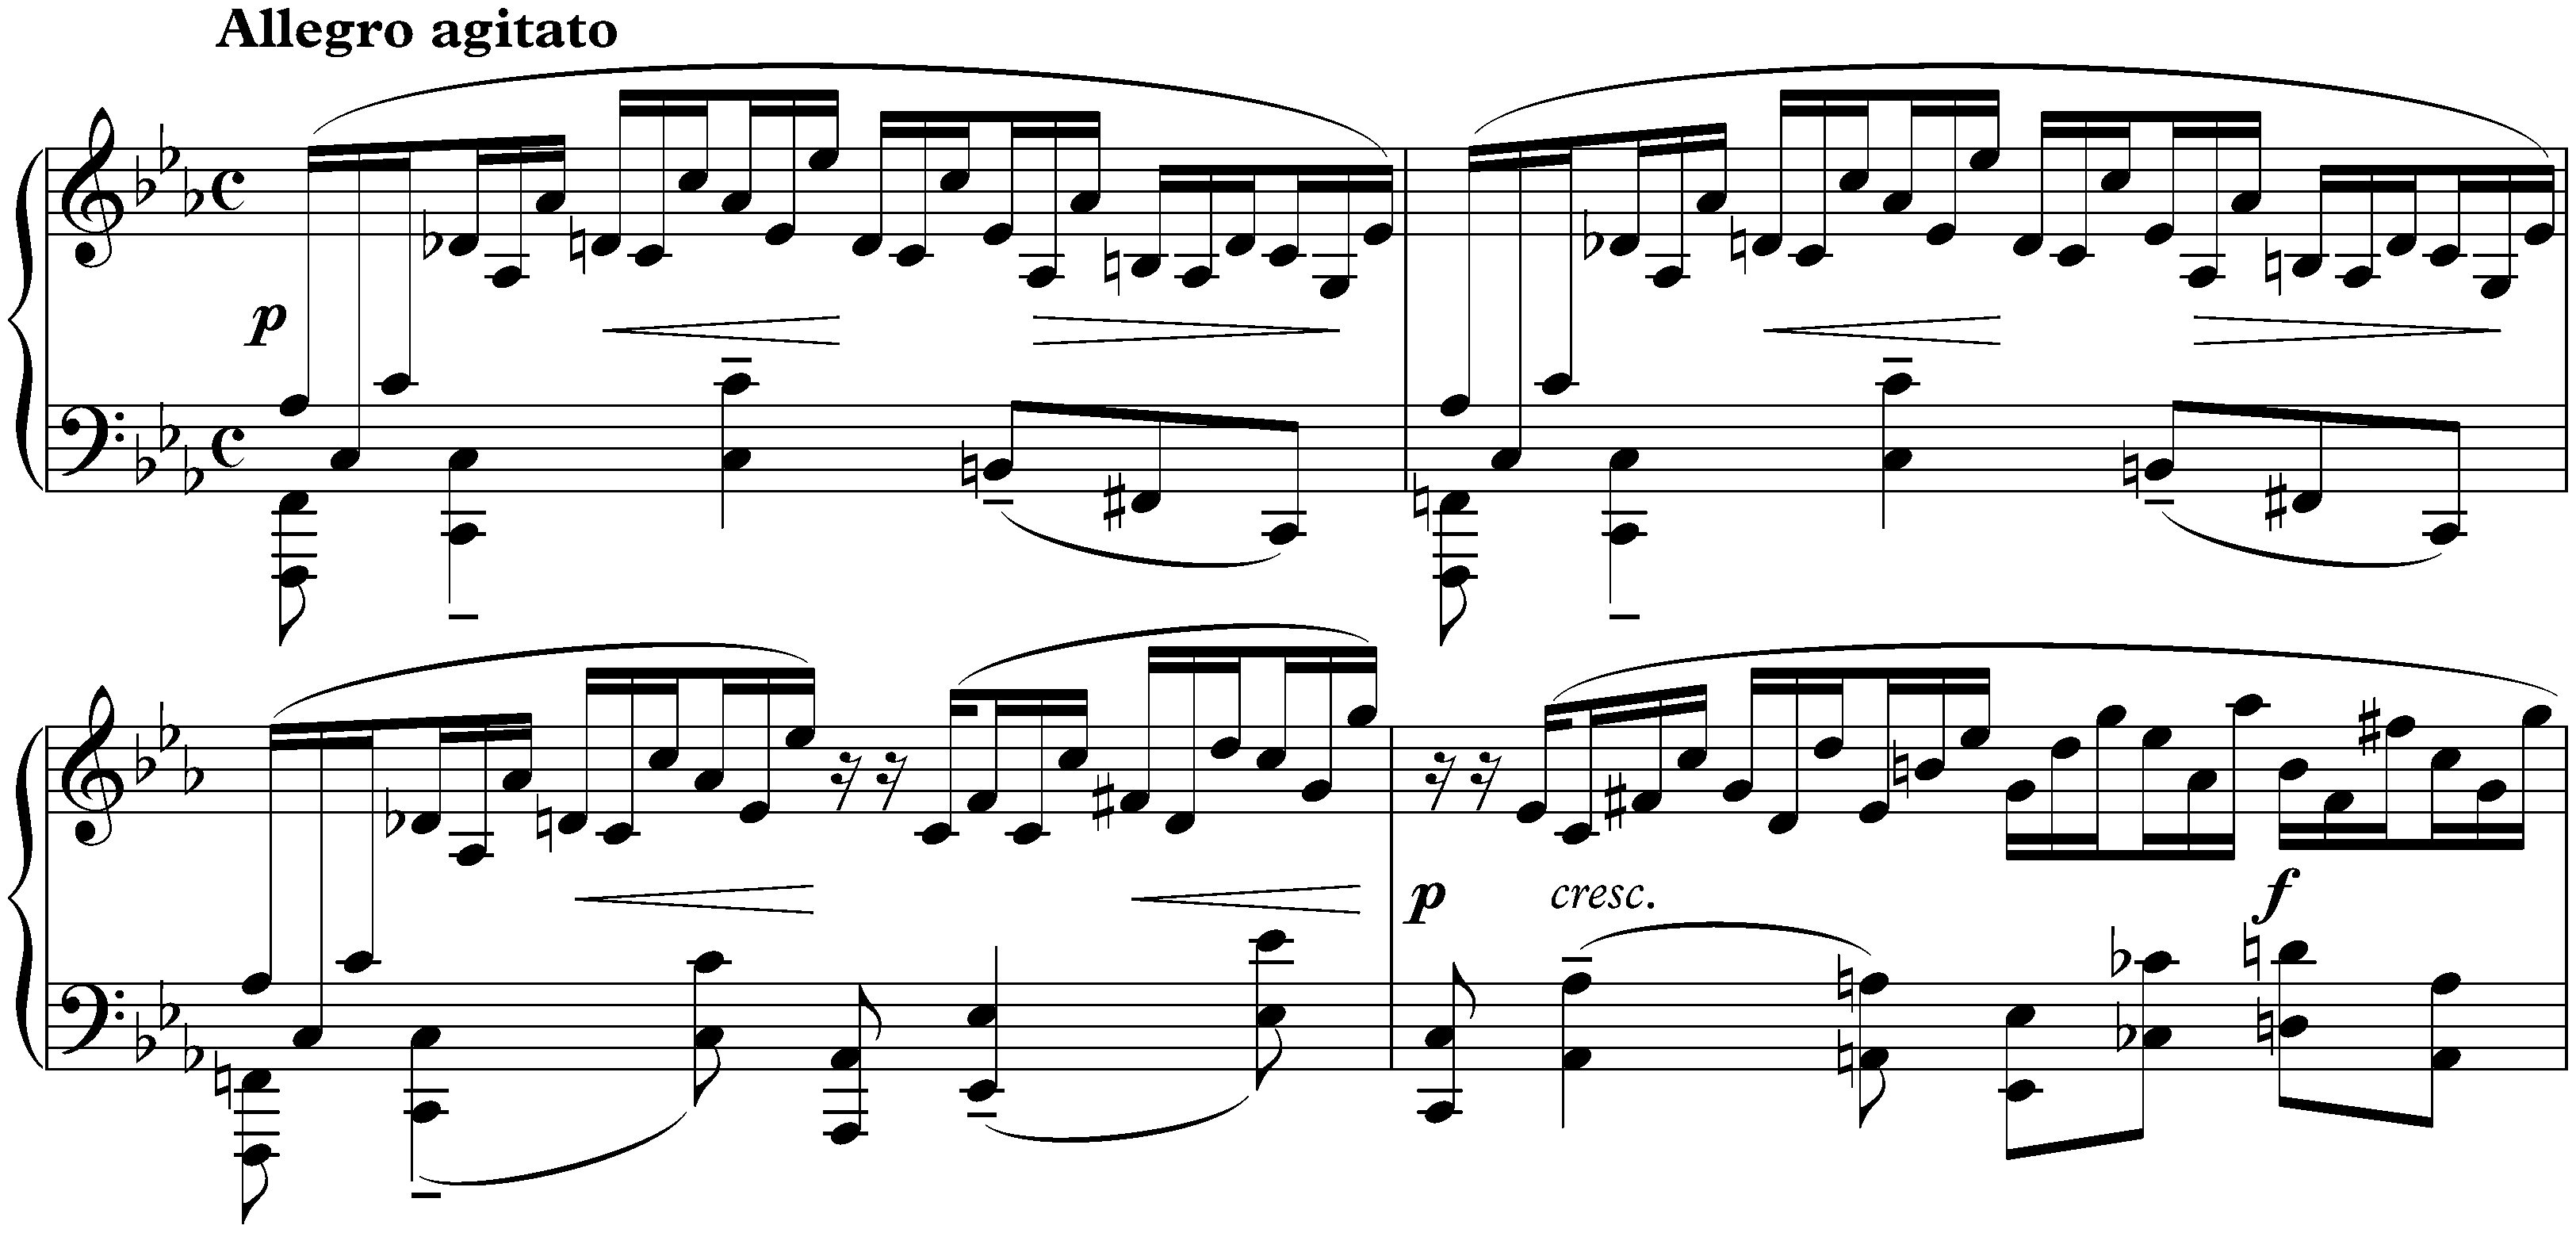 Études-tableaux, op. 39; 1. C minor